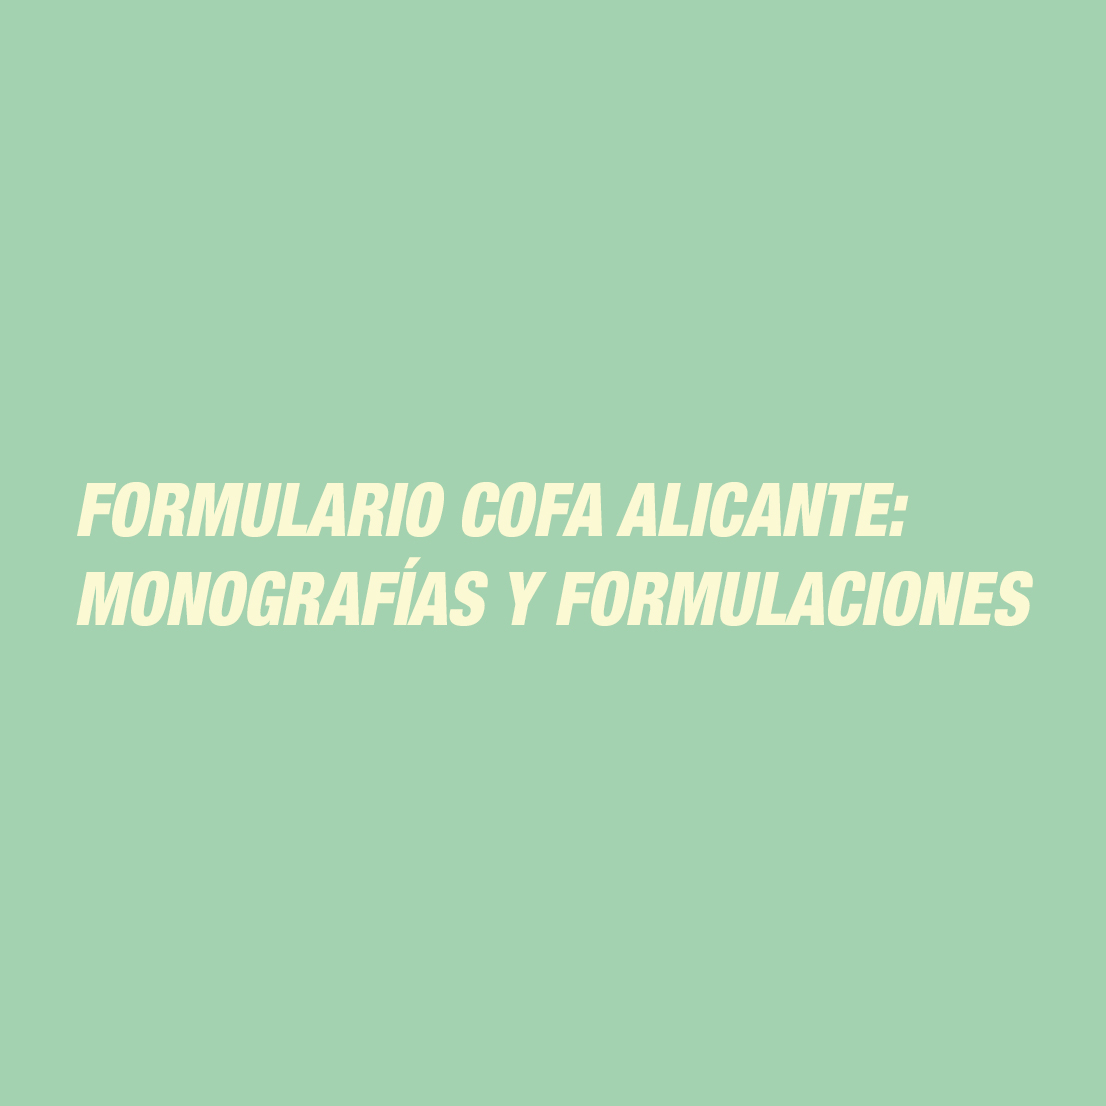 Formulario COFA Alicante: Monografías y Formulaciones